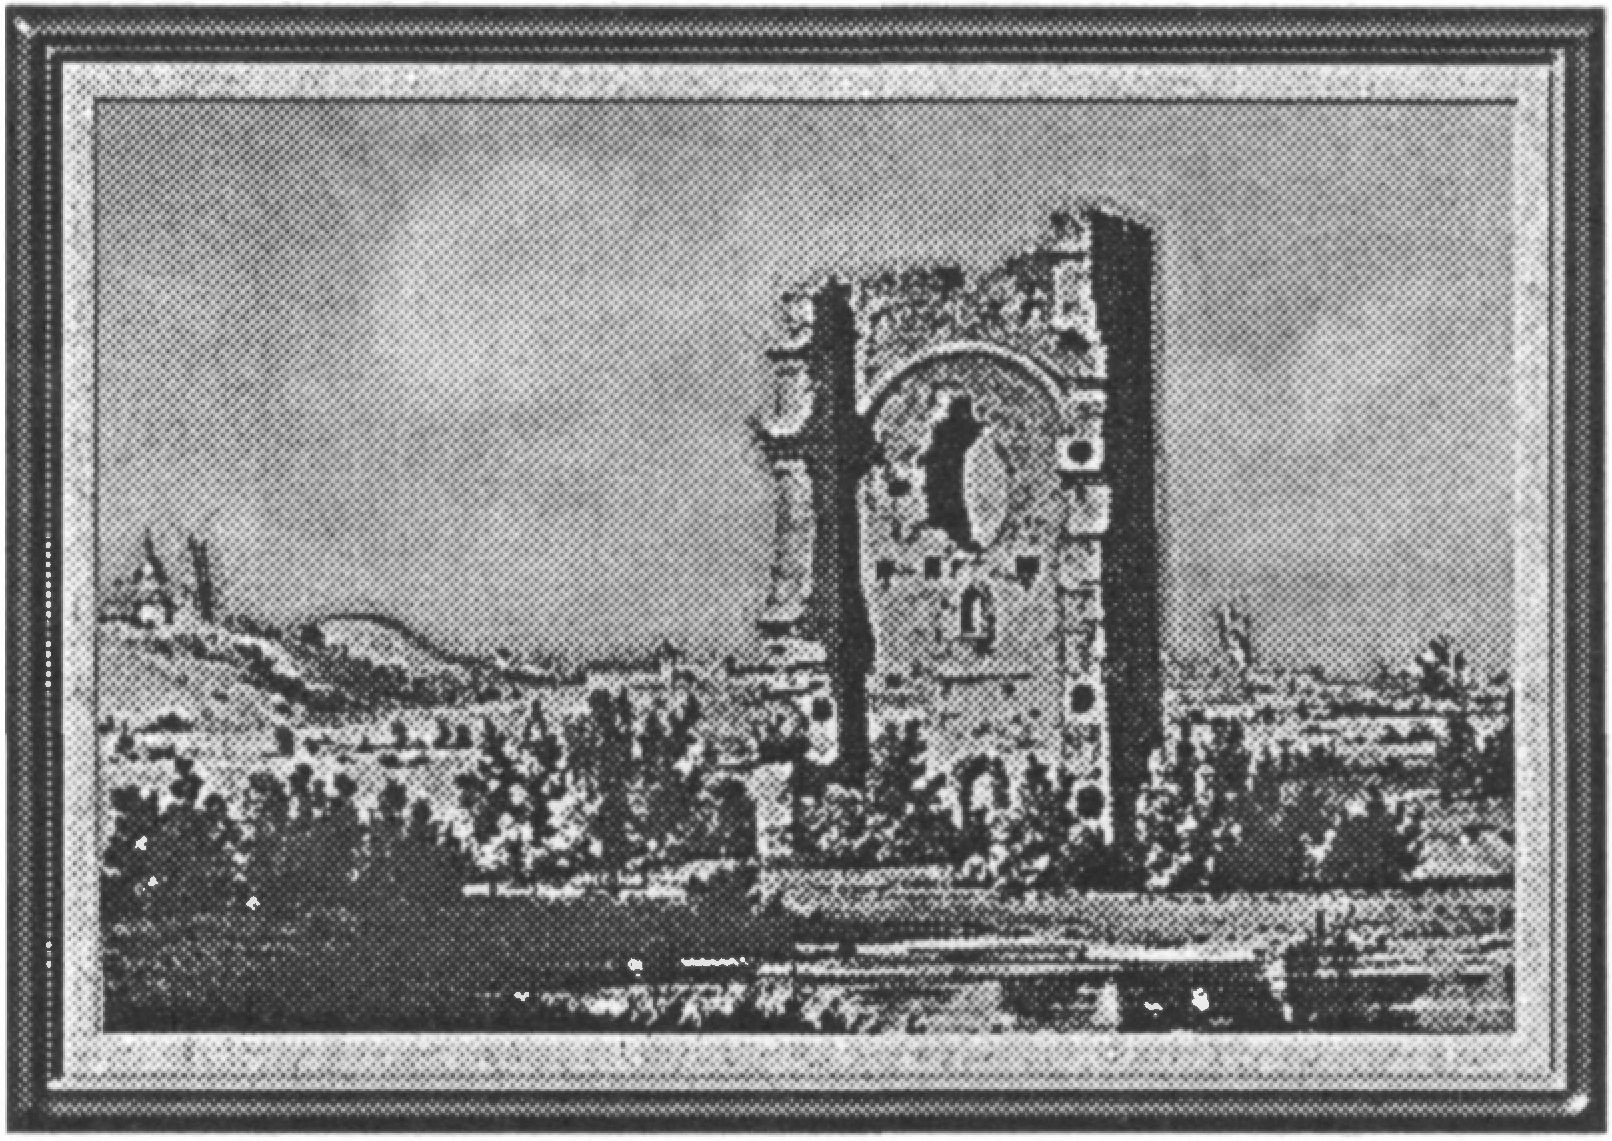 Ил. 124. Адам Ле Руе (18257—1863). Развалины башни в Белавине. Рисунок из «Люблинского альбома» (1857—1860 гг.)